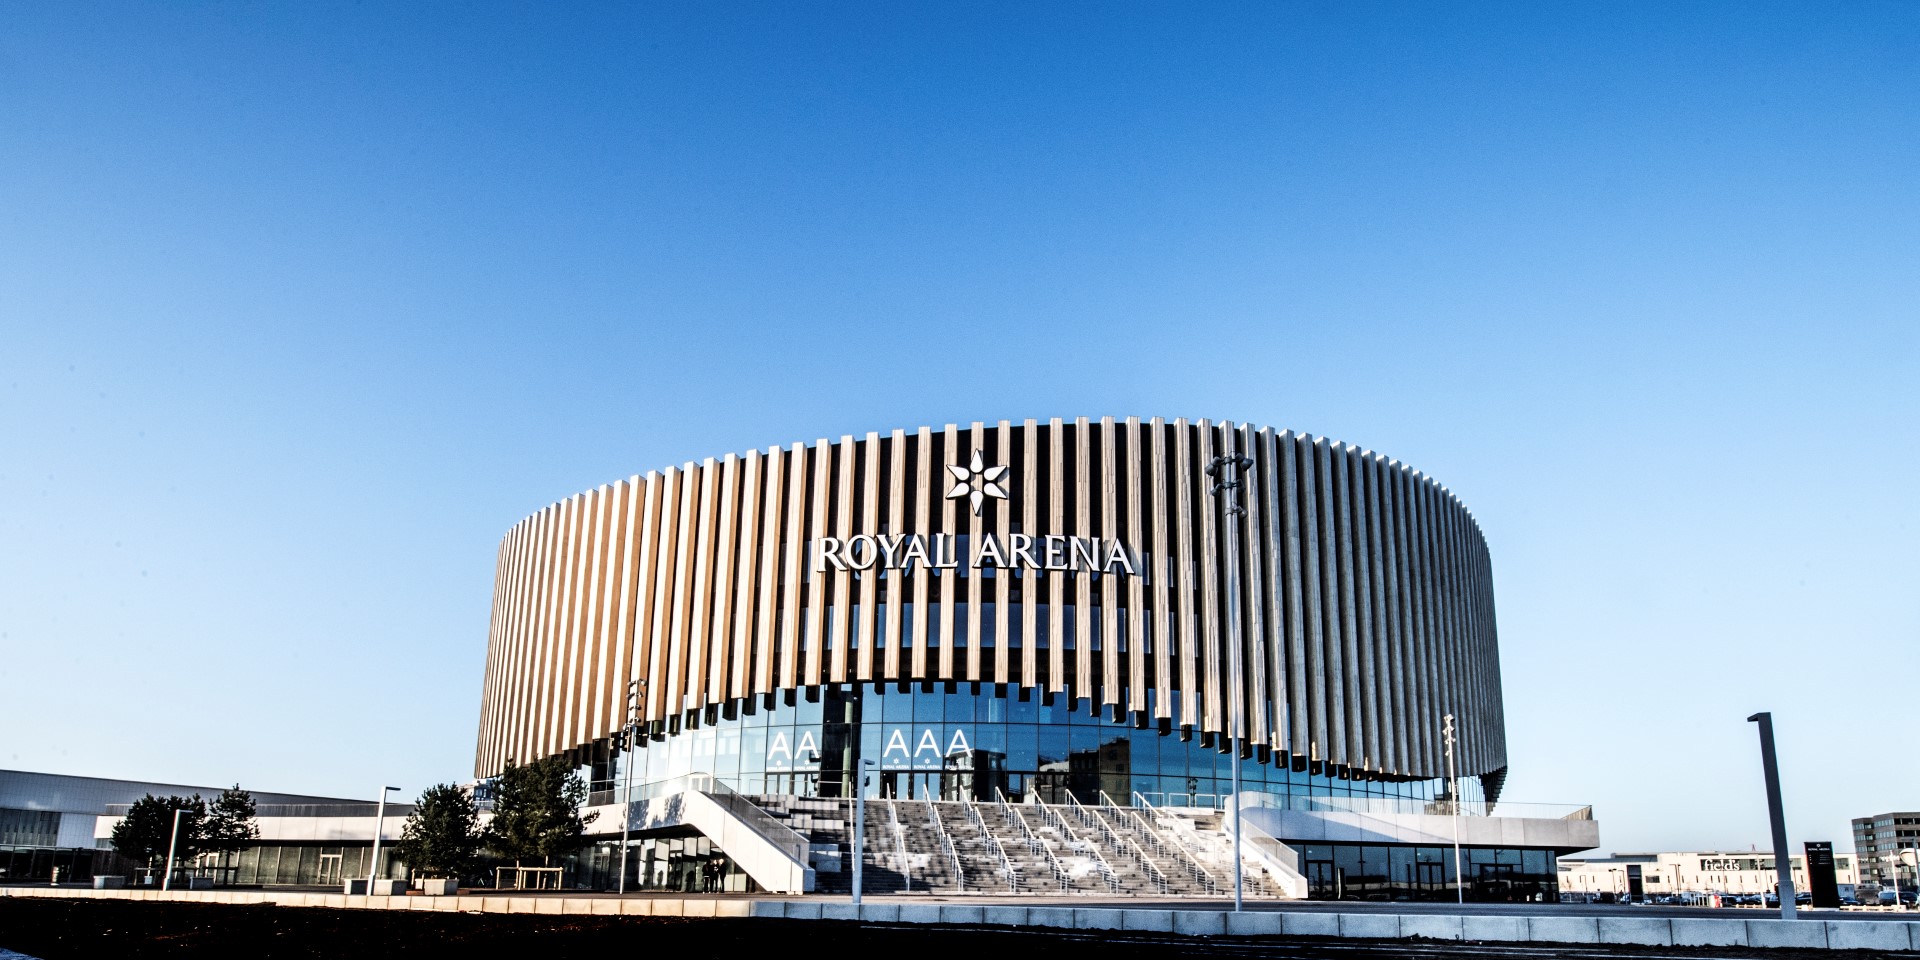 Sudan nul øjeblikkelig Stærkt første år for Royal Arena | Royal Arena